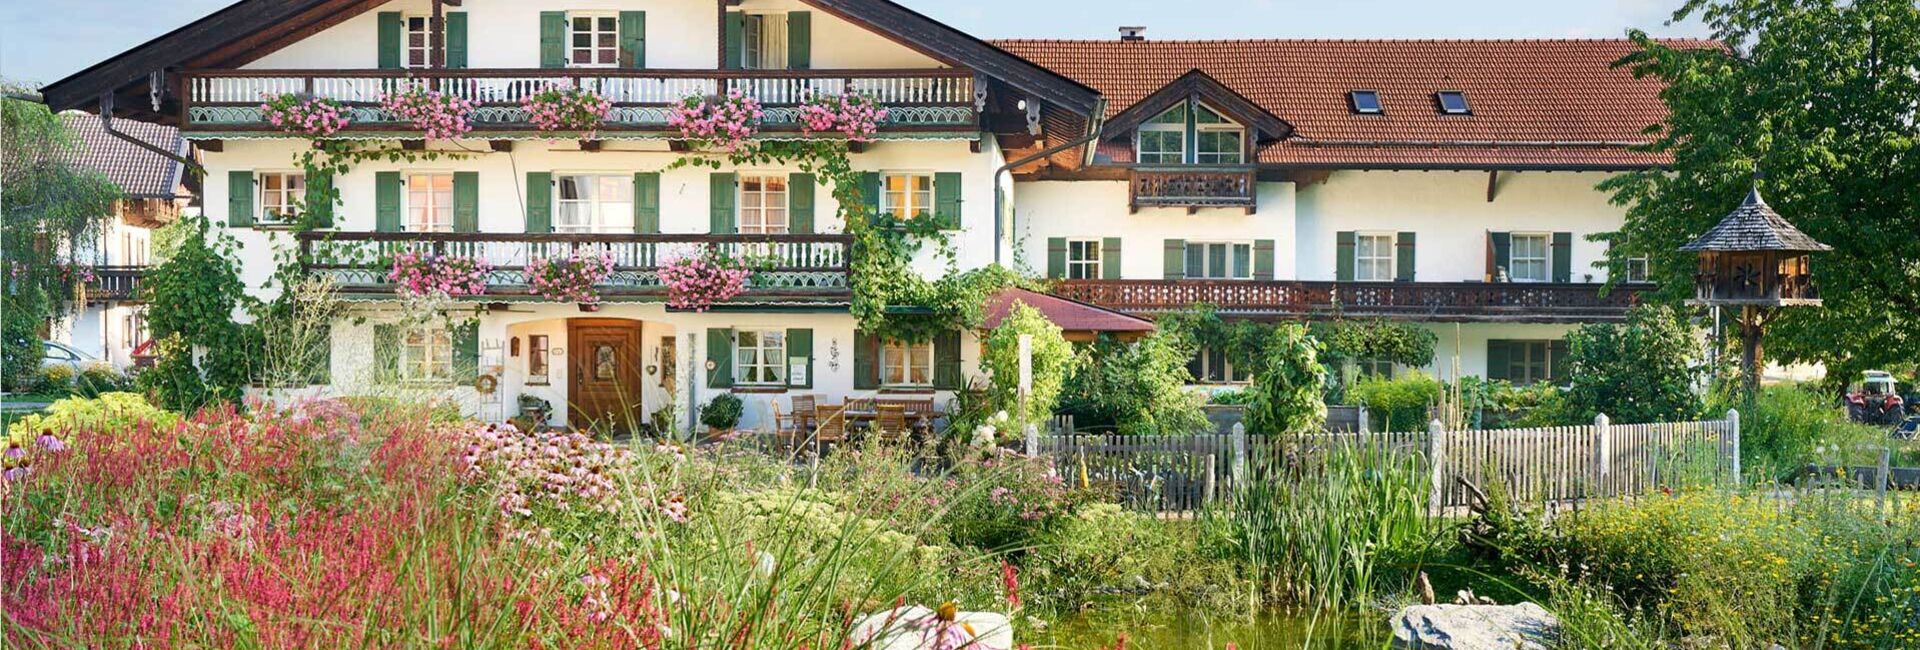 Impressionen vom Wachingerhof bei Bad Feilnbach in Oberbayern